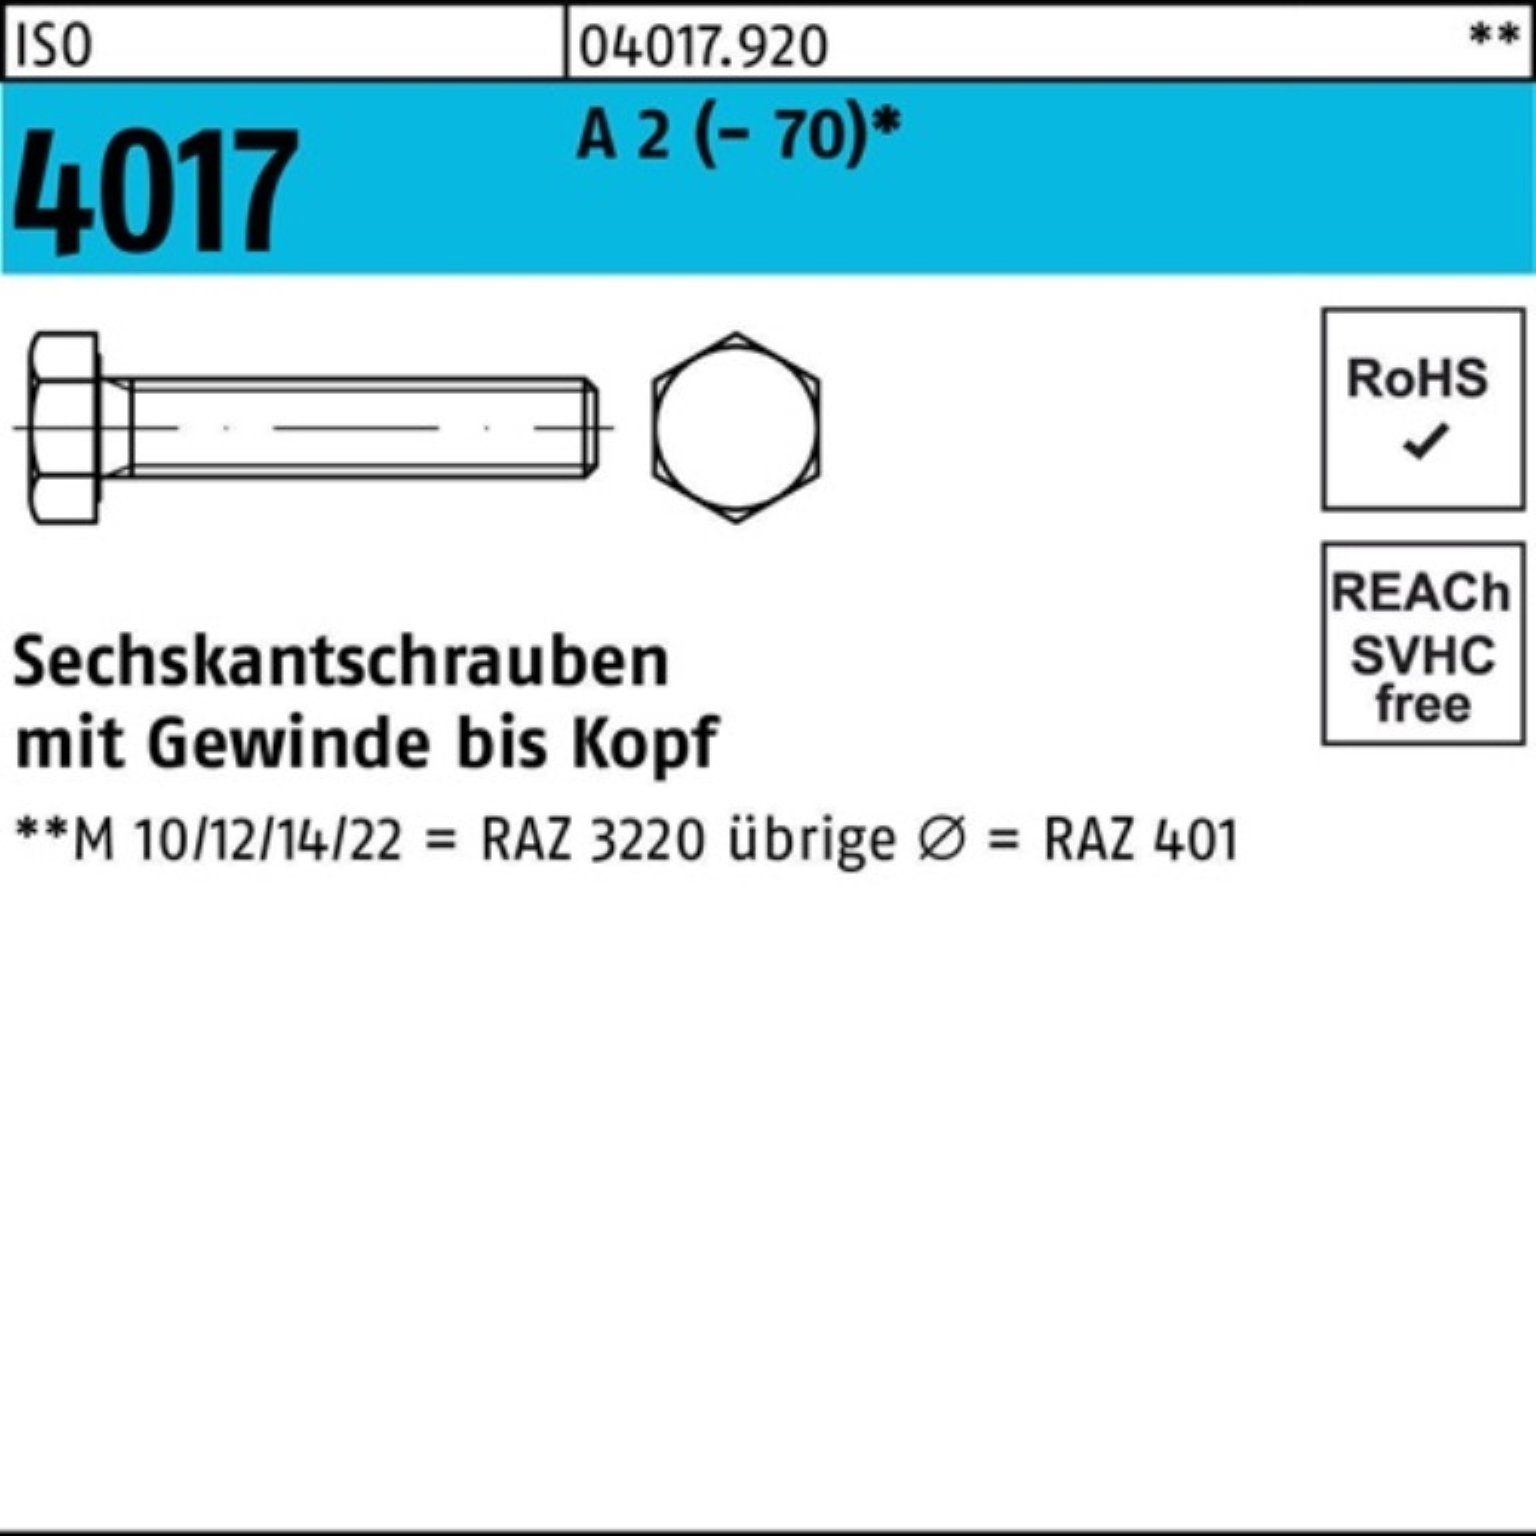 4017 ISO Sechskantschraube Stück Bufab Sechskantschraube M10x 10 A 100er Pack (70) 2 VG 100